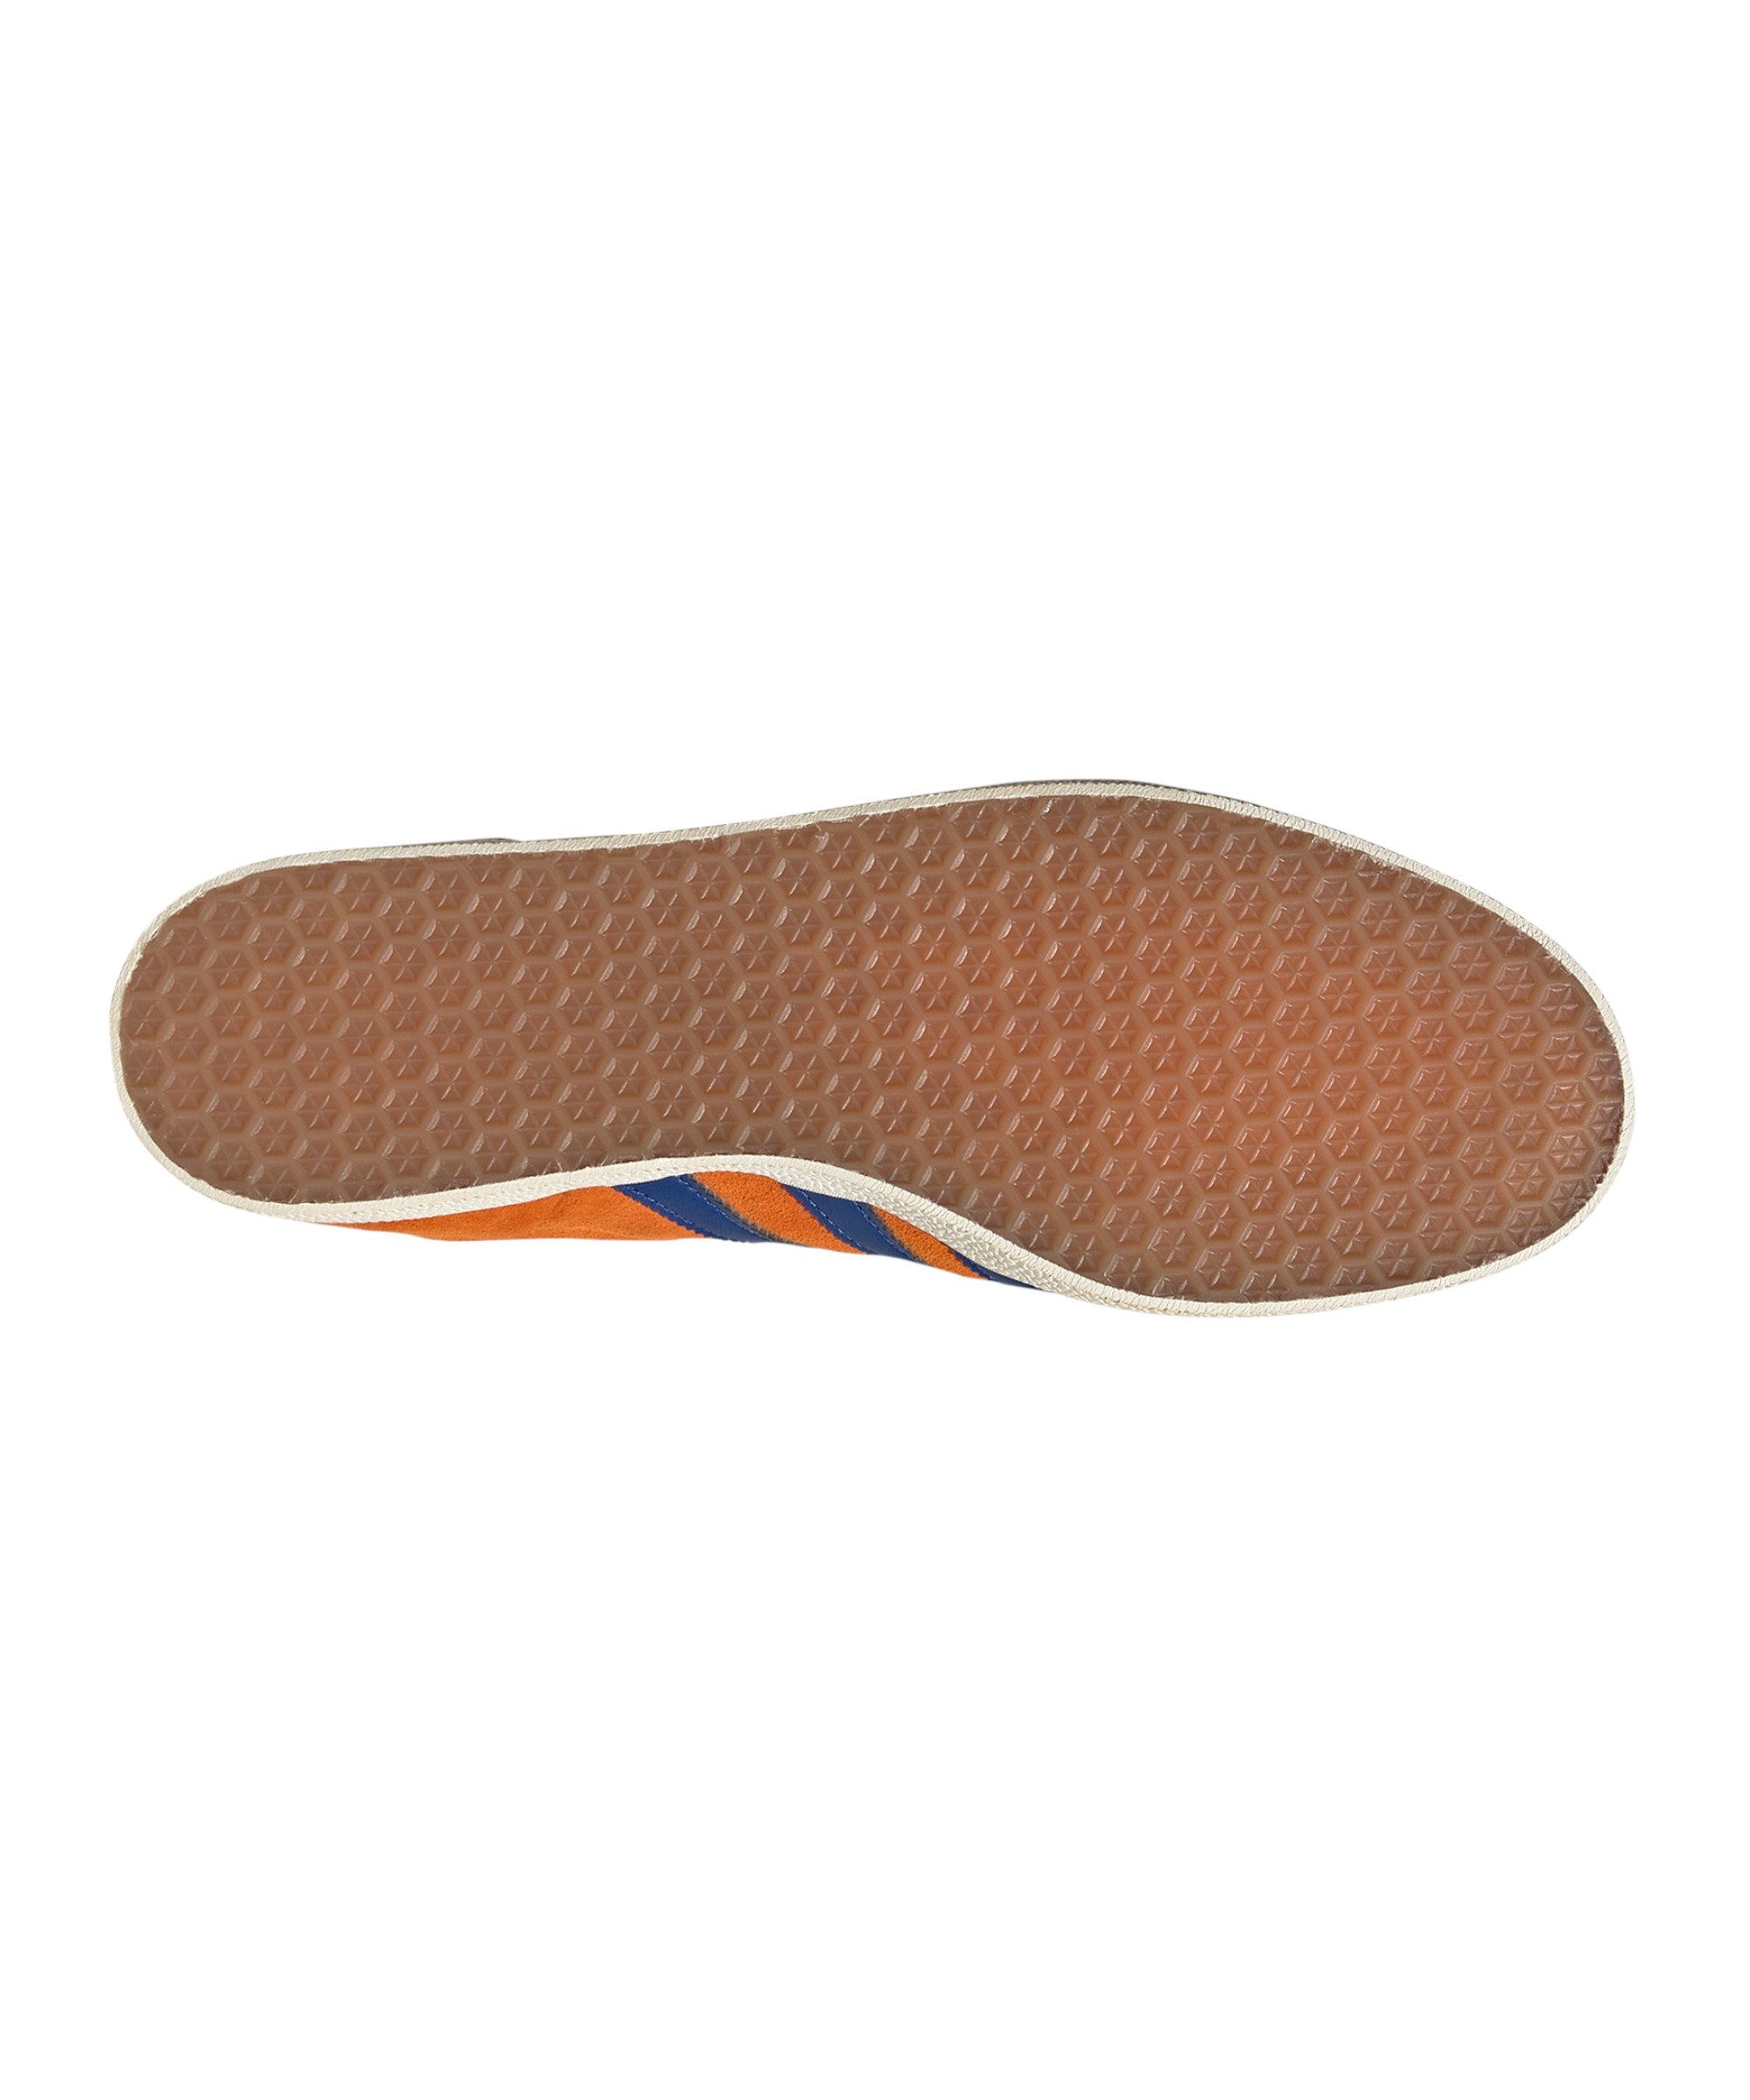 Originals Sneaker Gazelle orangeblauweiss adidas